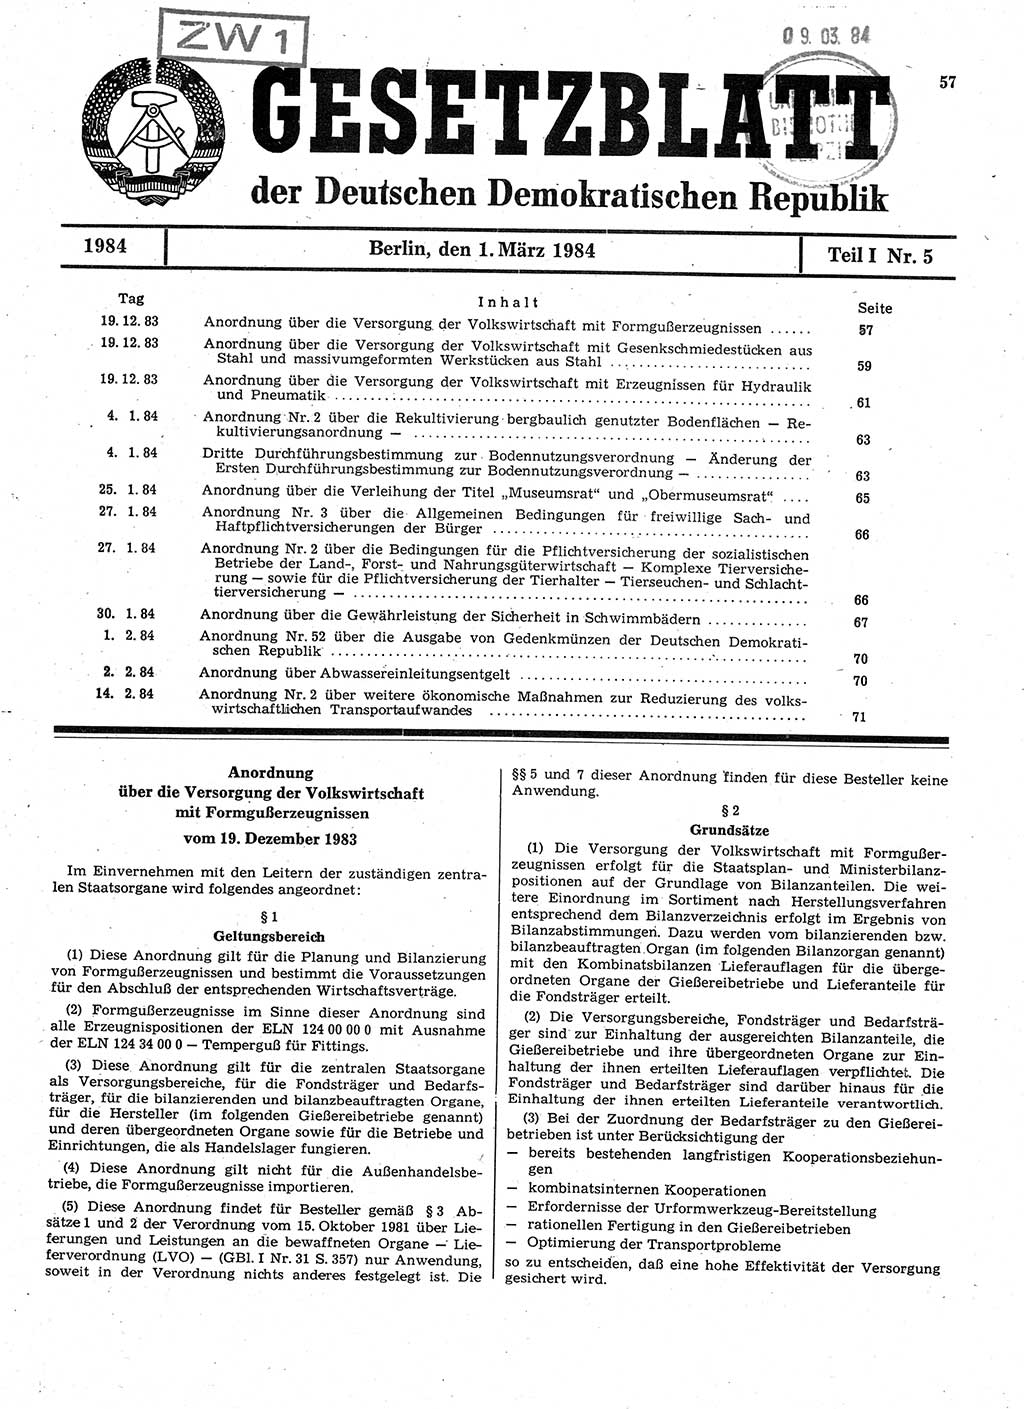 Gesetzblatt (GBl.) der Deutschen Demokratischen Republik (DDR) Teil Ⅰ 1984, Seite 57 (GBl. DDR Ⅰ 1984, S. 57)